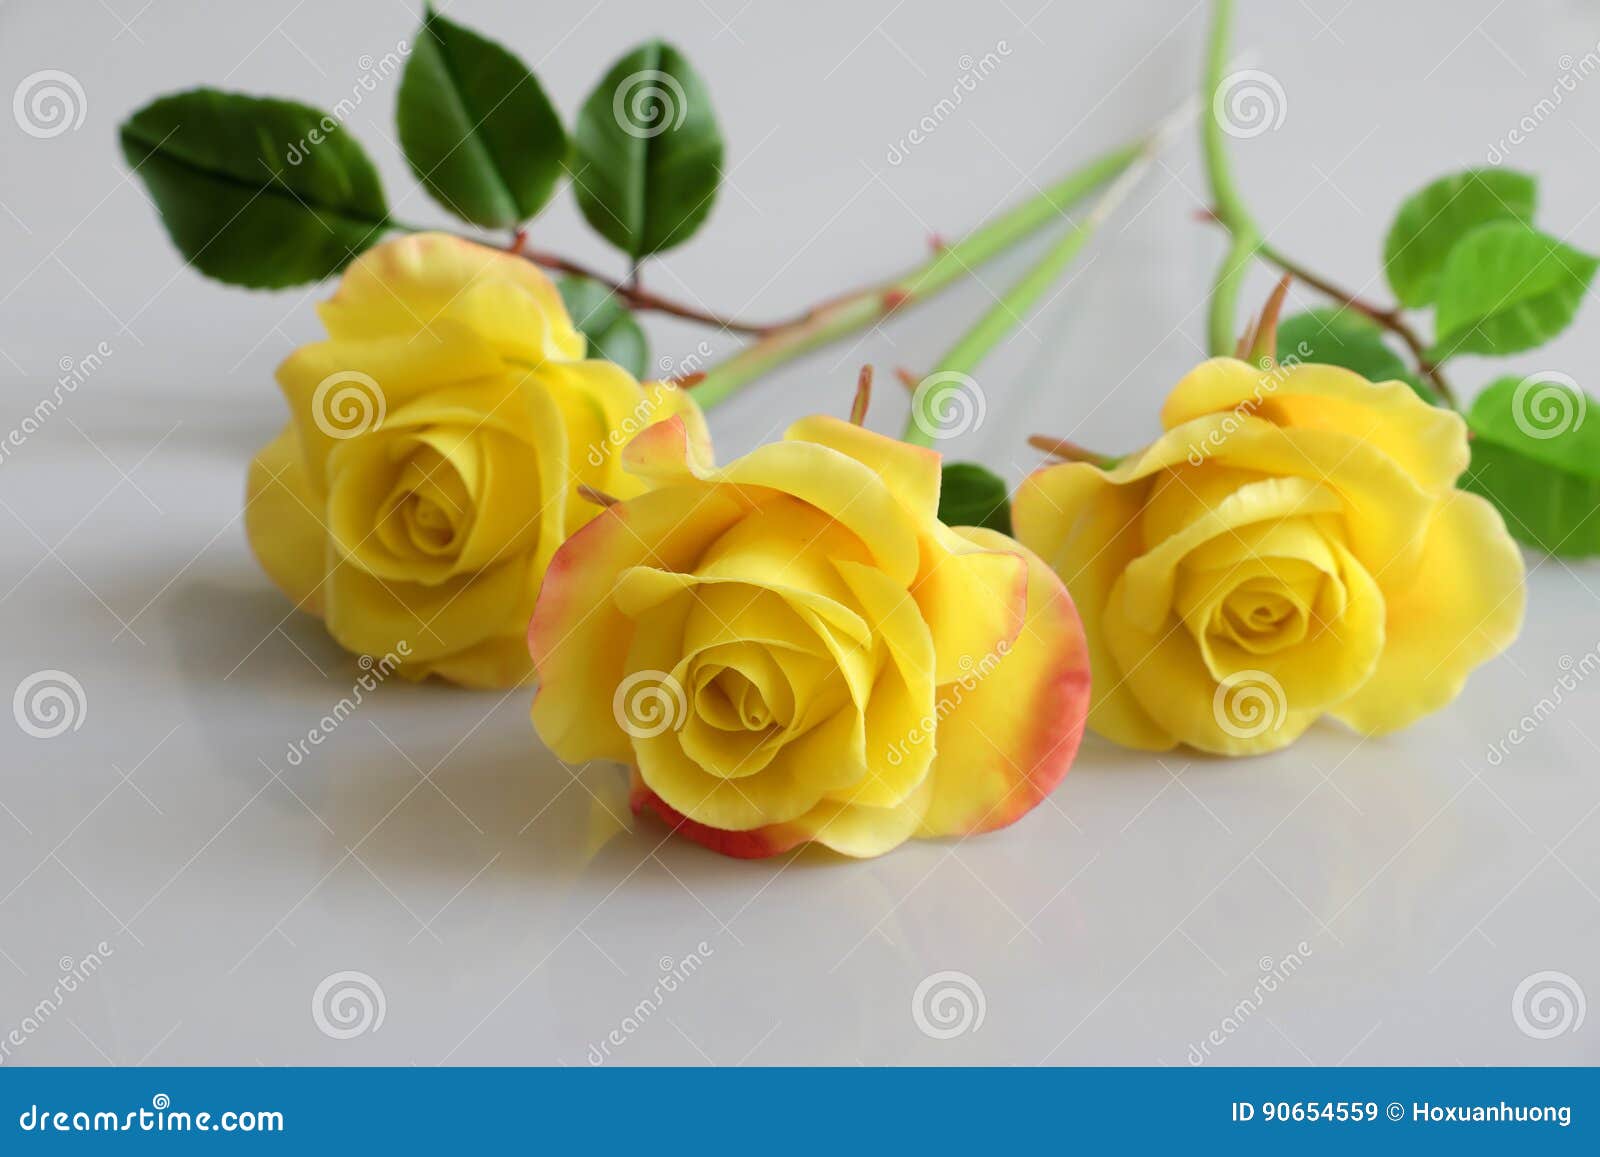 Flor Das Rosas Amarelas Da Argila No Fundo Branco Imagem de Stock - Imagem  de flor, amarelo: 90654559